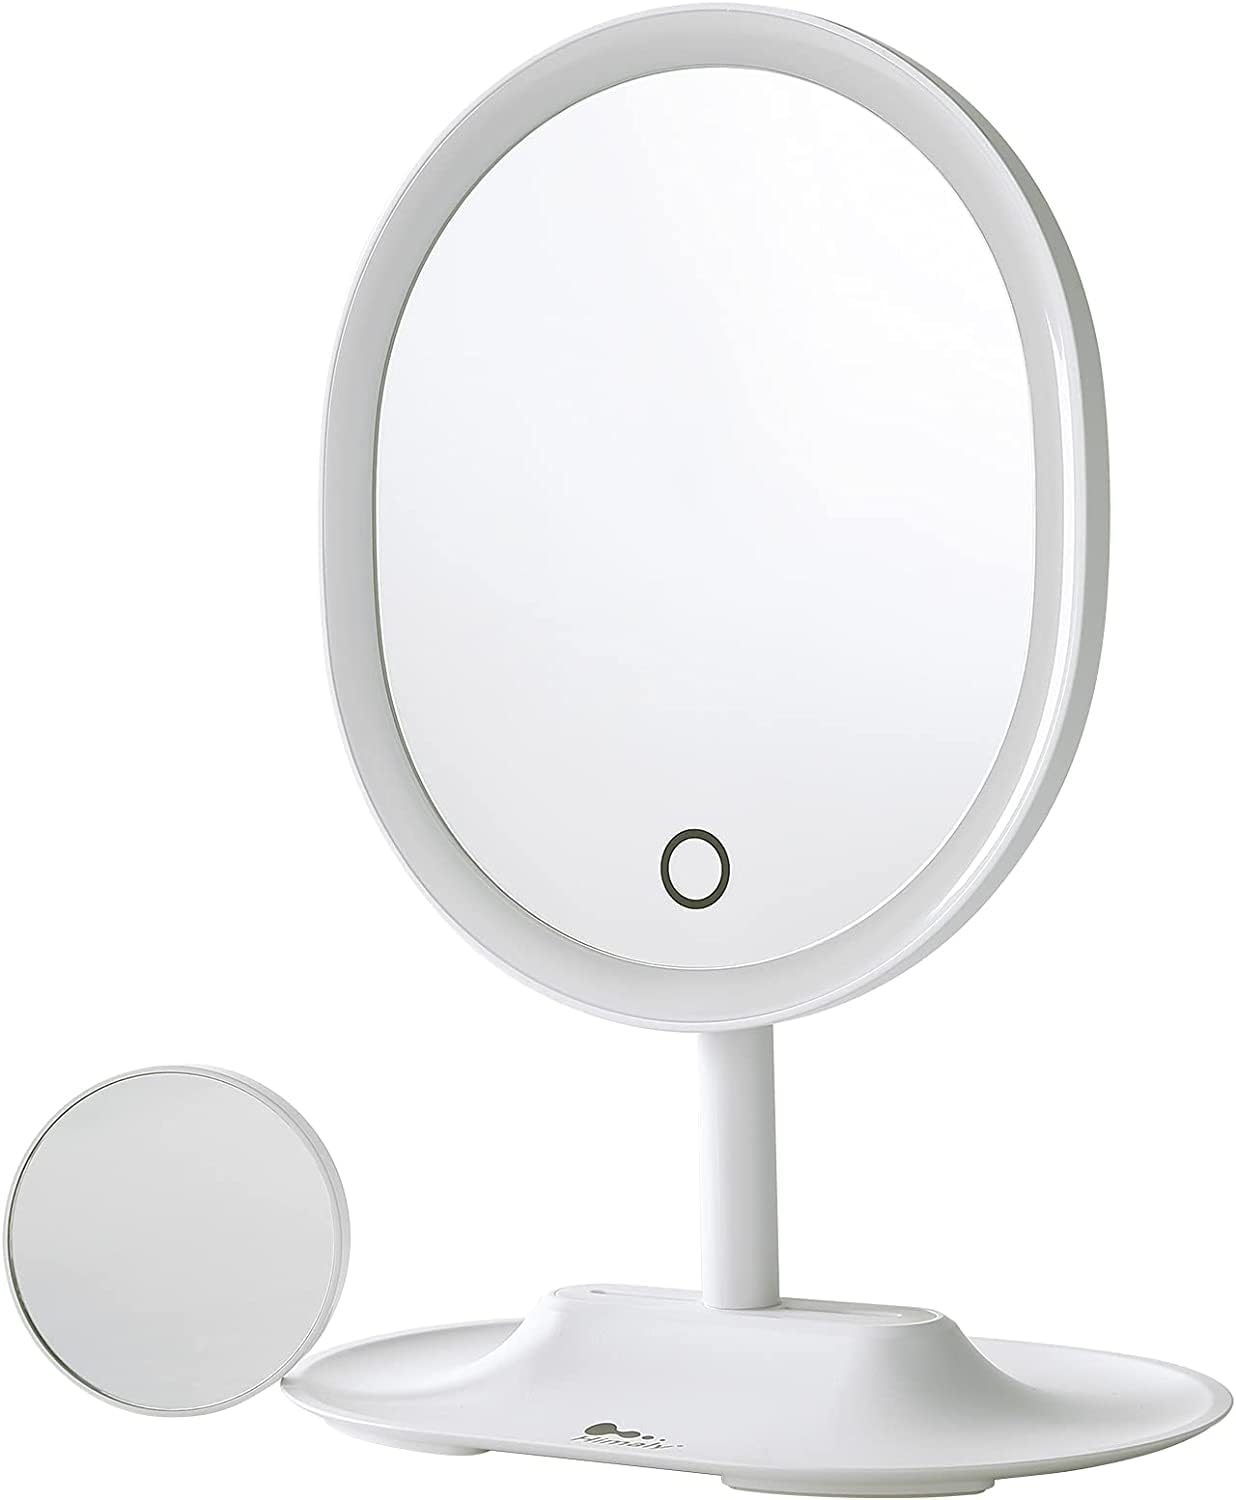 himaly Make-up-Spiegel, rund, mit Licht, 1-fache 5-fache Vergrößerung, doppelseitig, 90 Grad drehbar, LED-Schminkspiegel mit stufenloser Beleuchtung und Touch-Steuerung, Dual-Netzteil